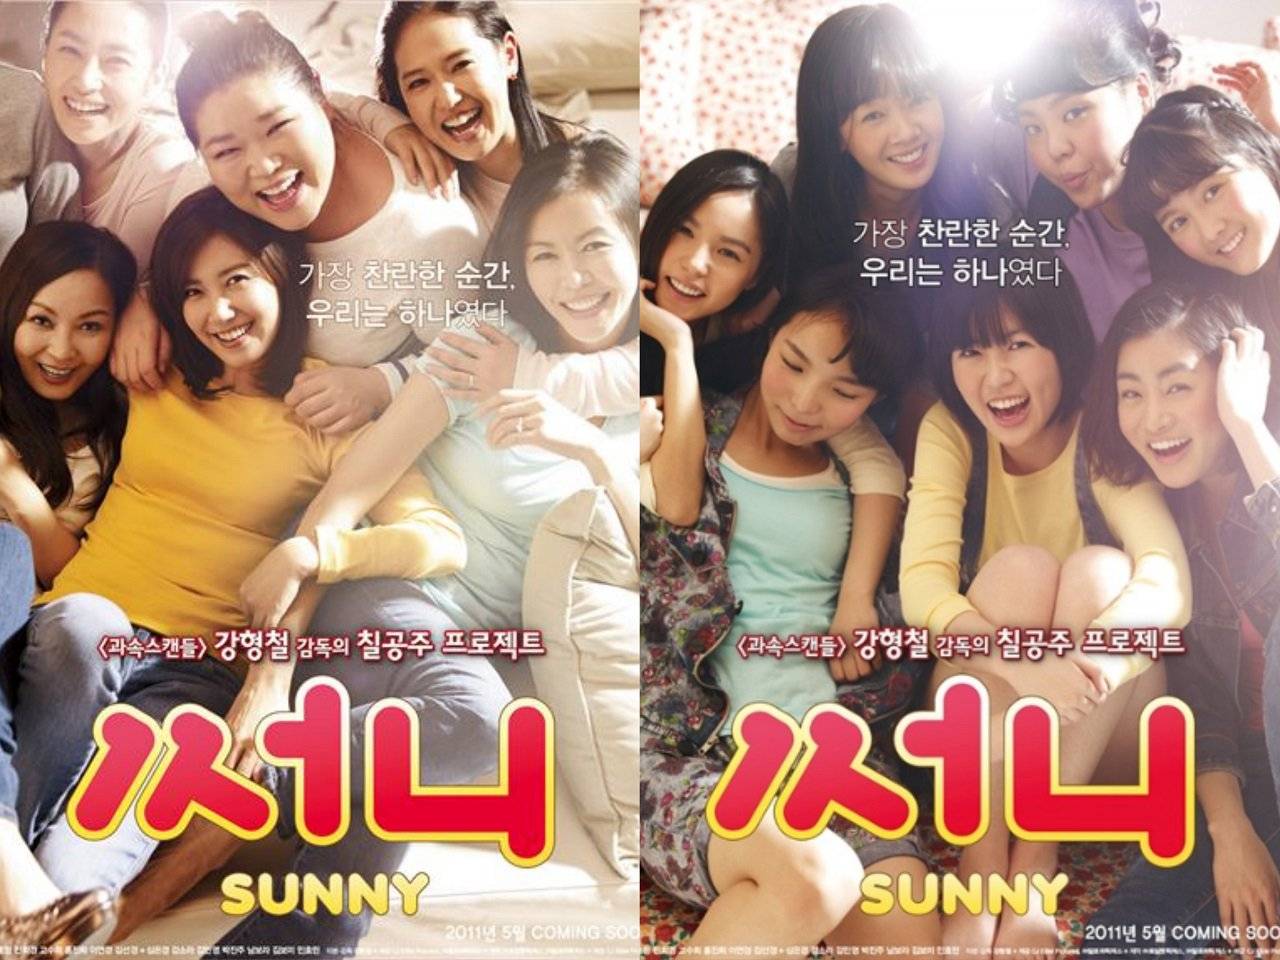 Sunny / Sunny (2011)